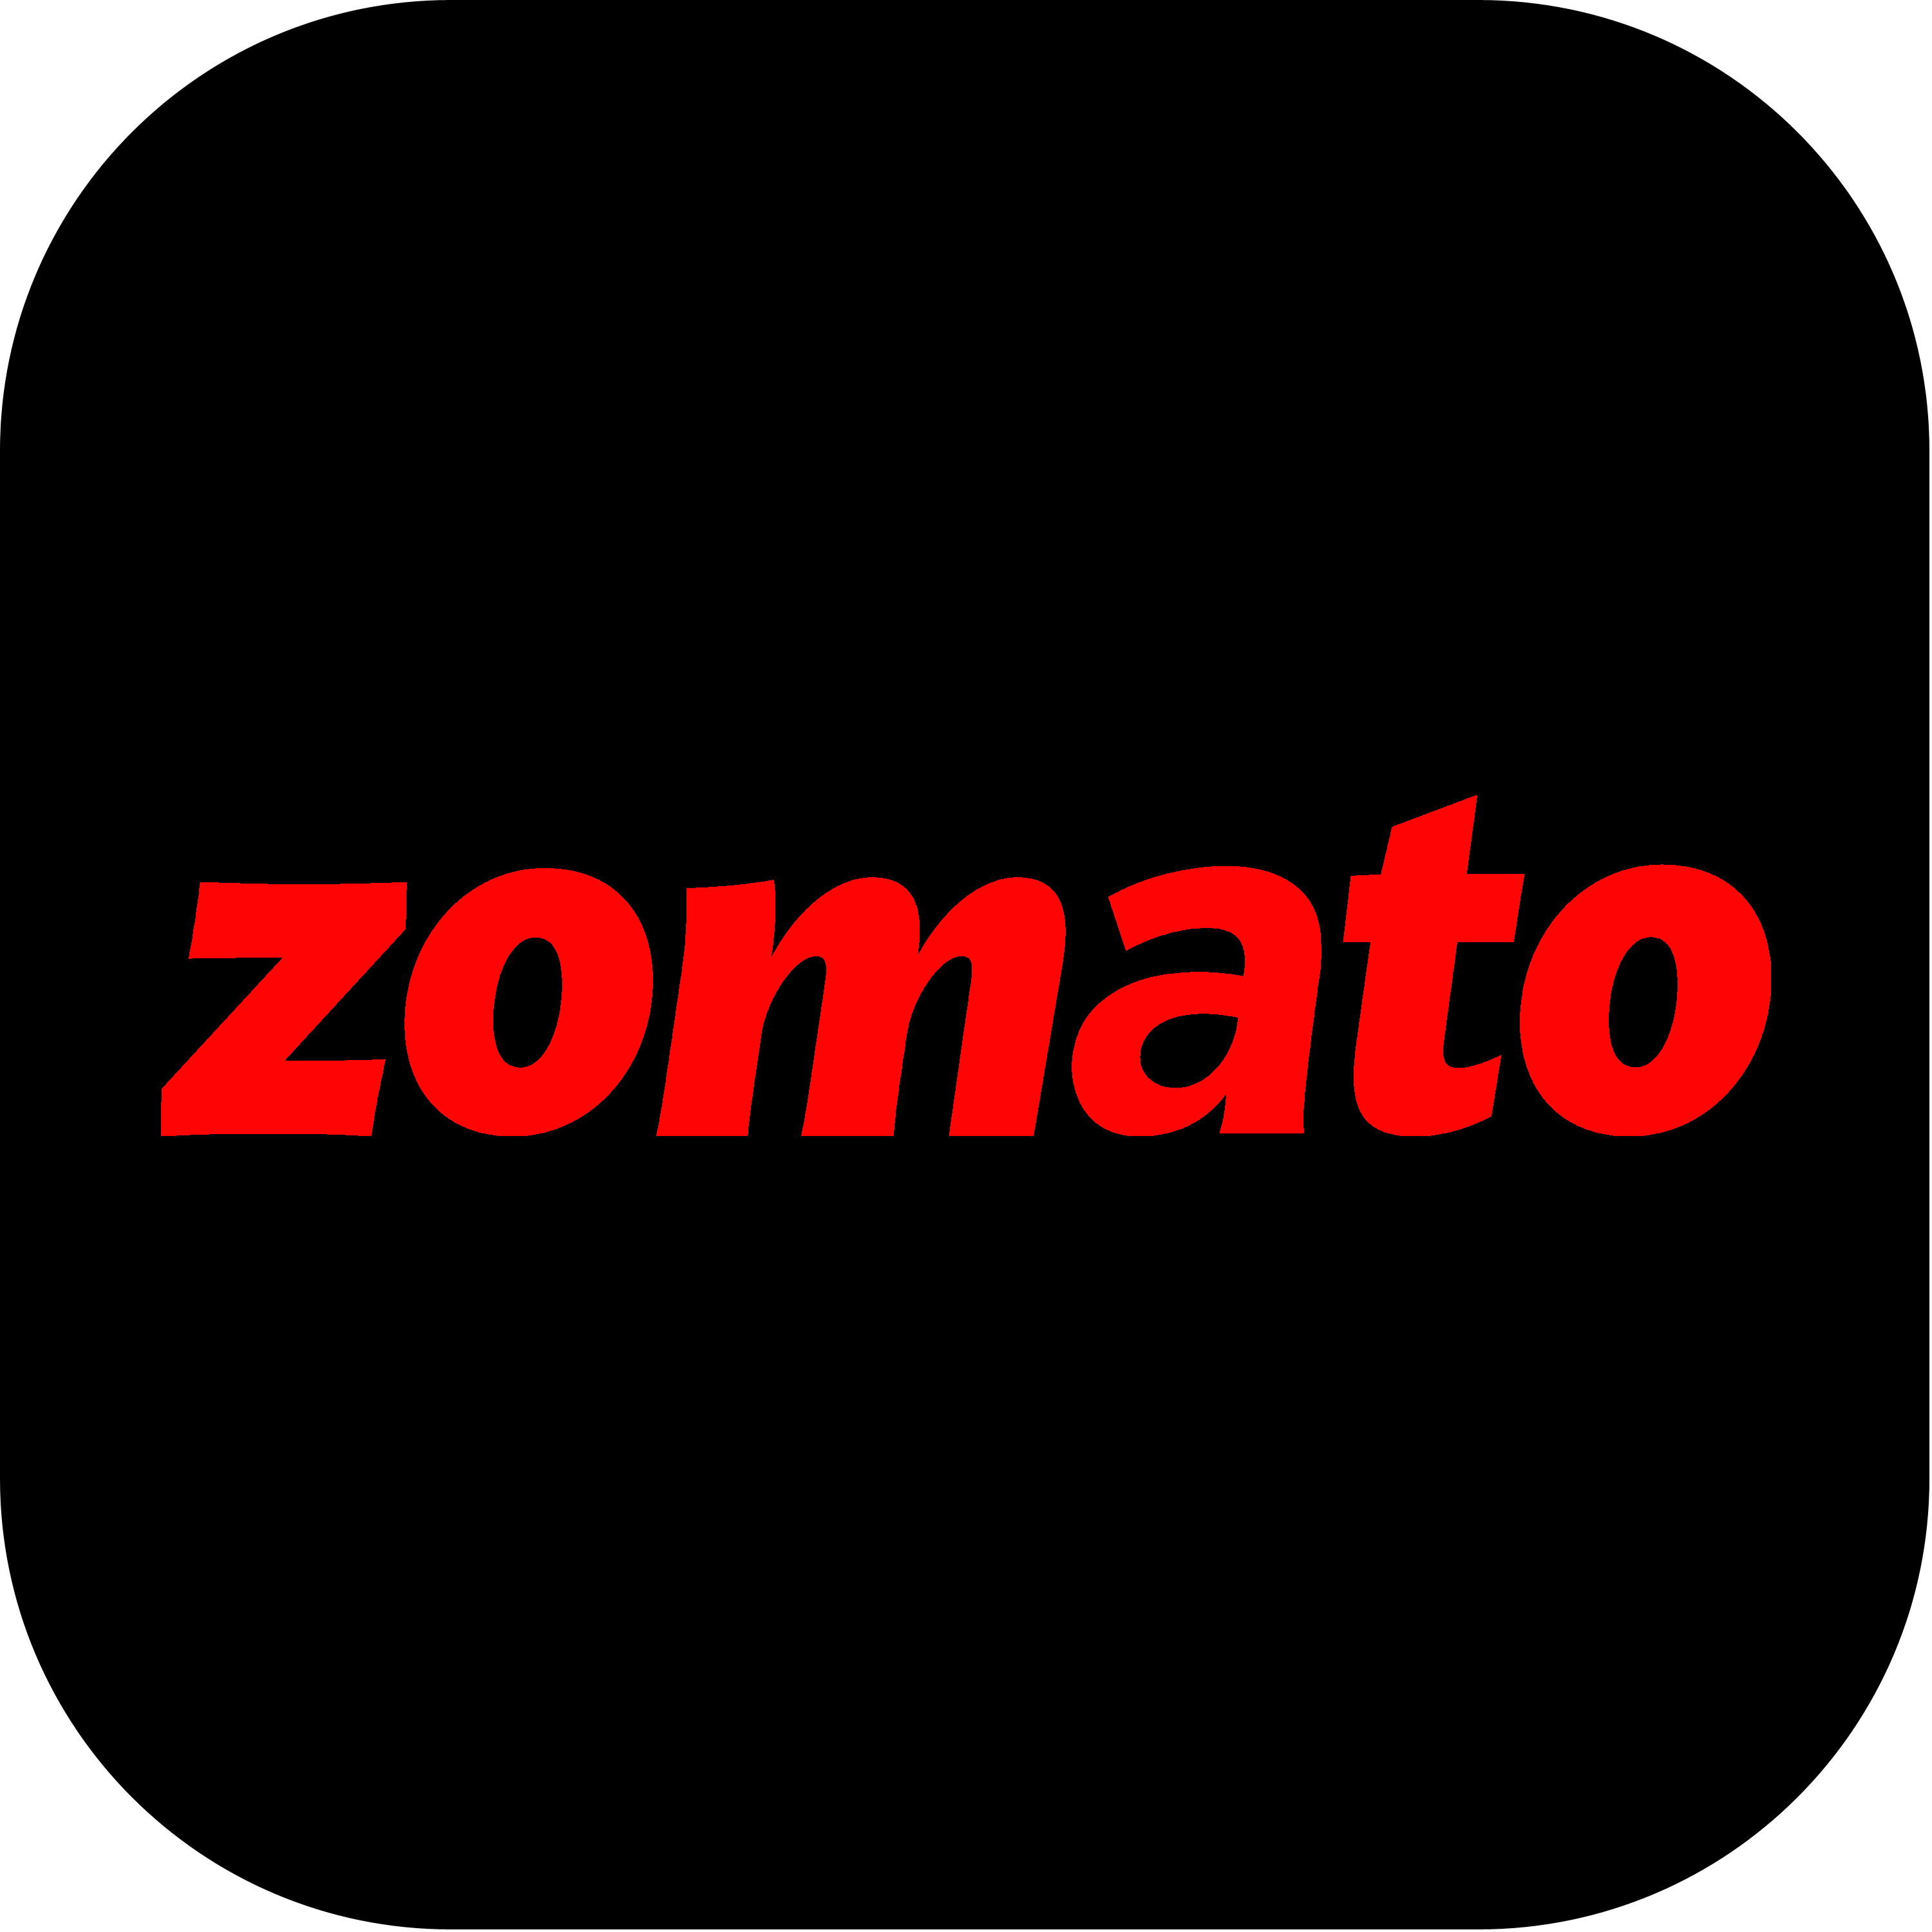 Zomato Logo Transparent Picture